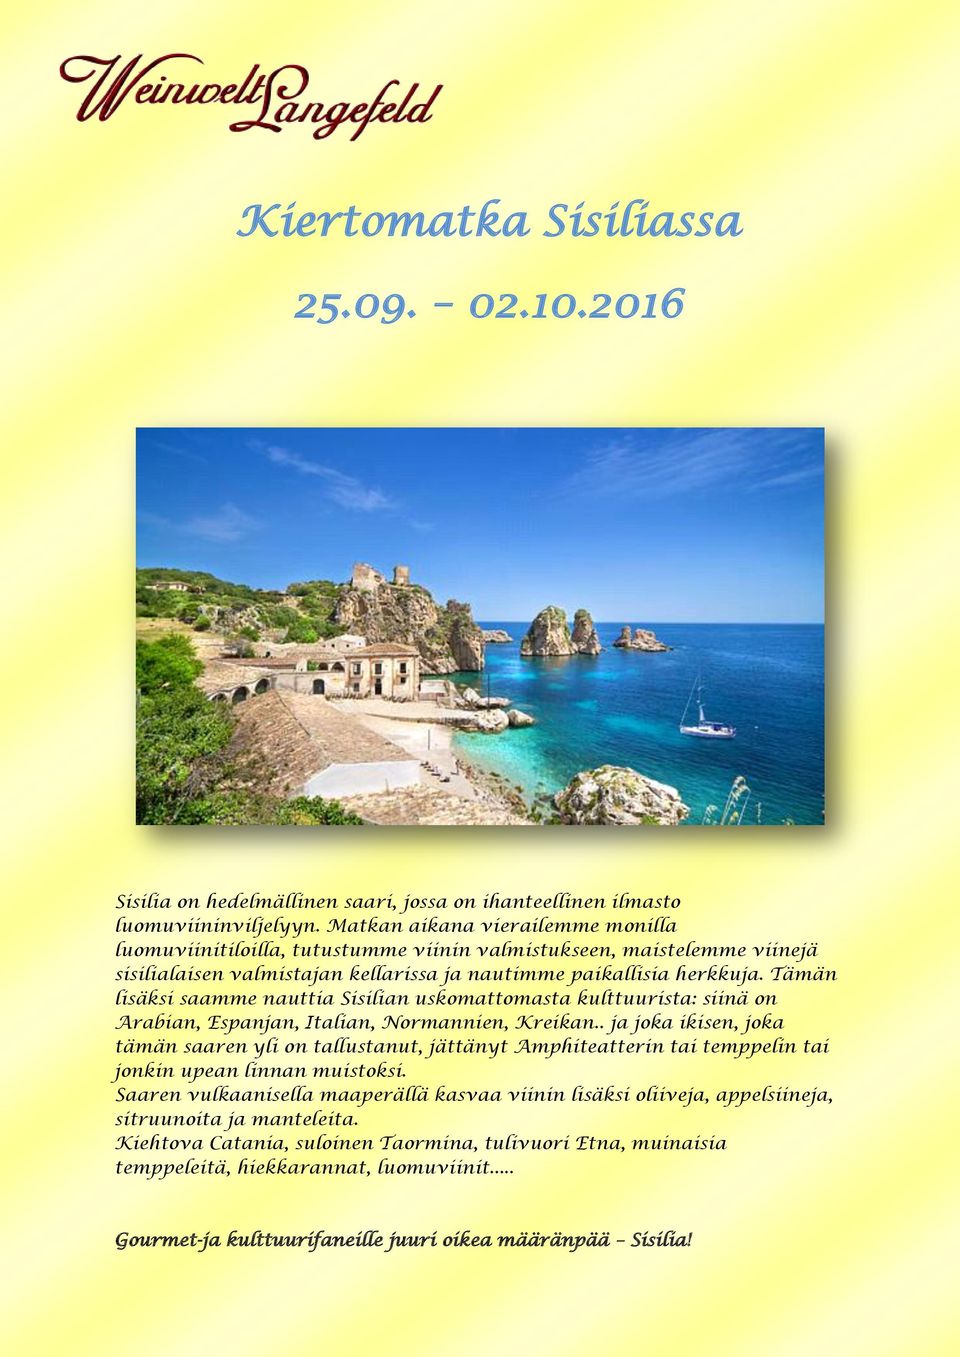 Tämän lisäksi saamme nauttia Sisilian uskomattomasta kulttuurista: siinä on Arabian, Espanjan, Italian, Normannien, Kreikan.